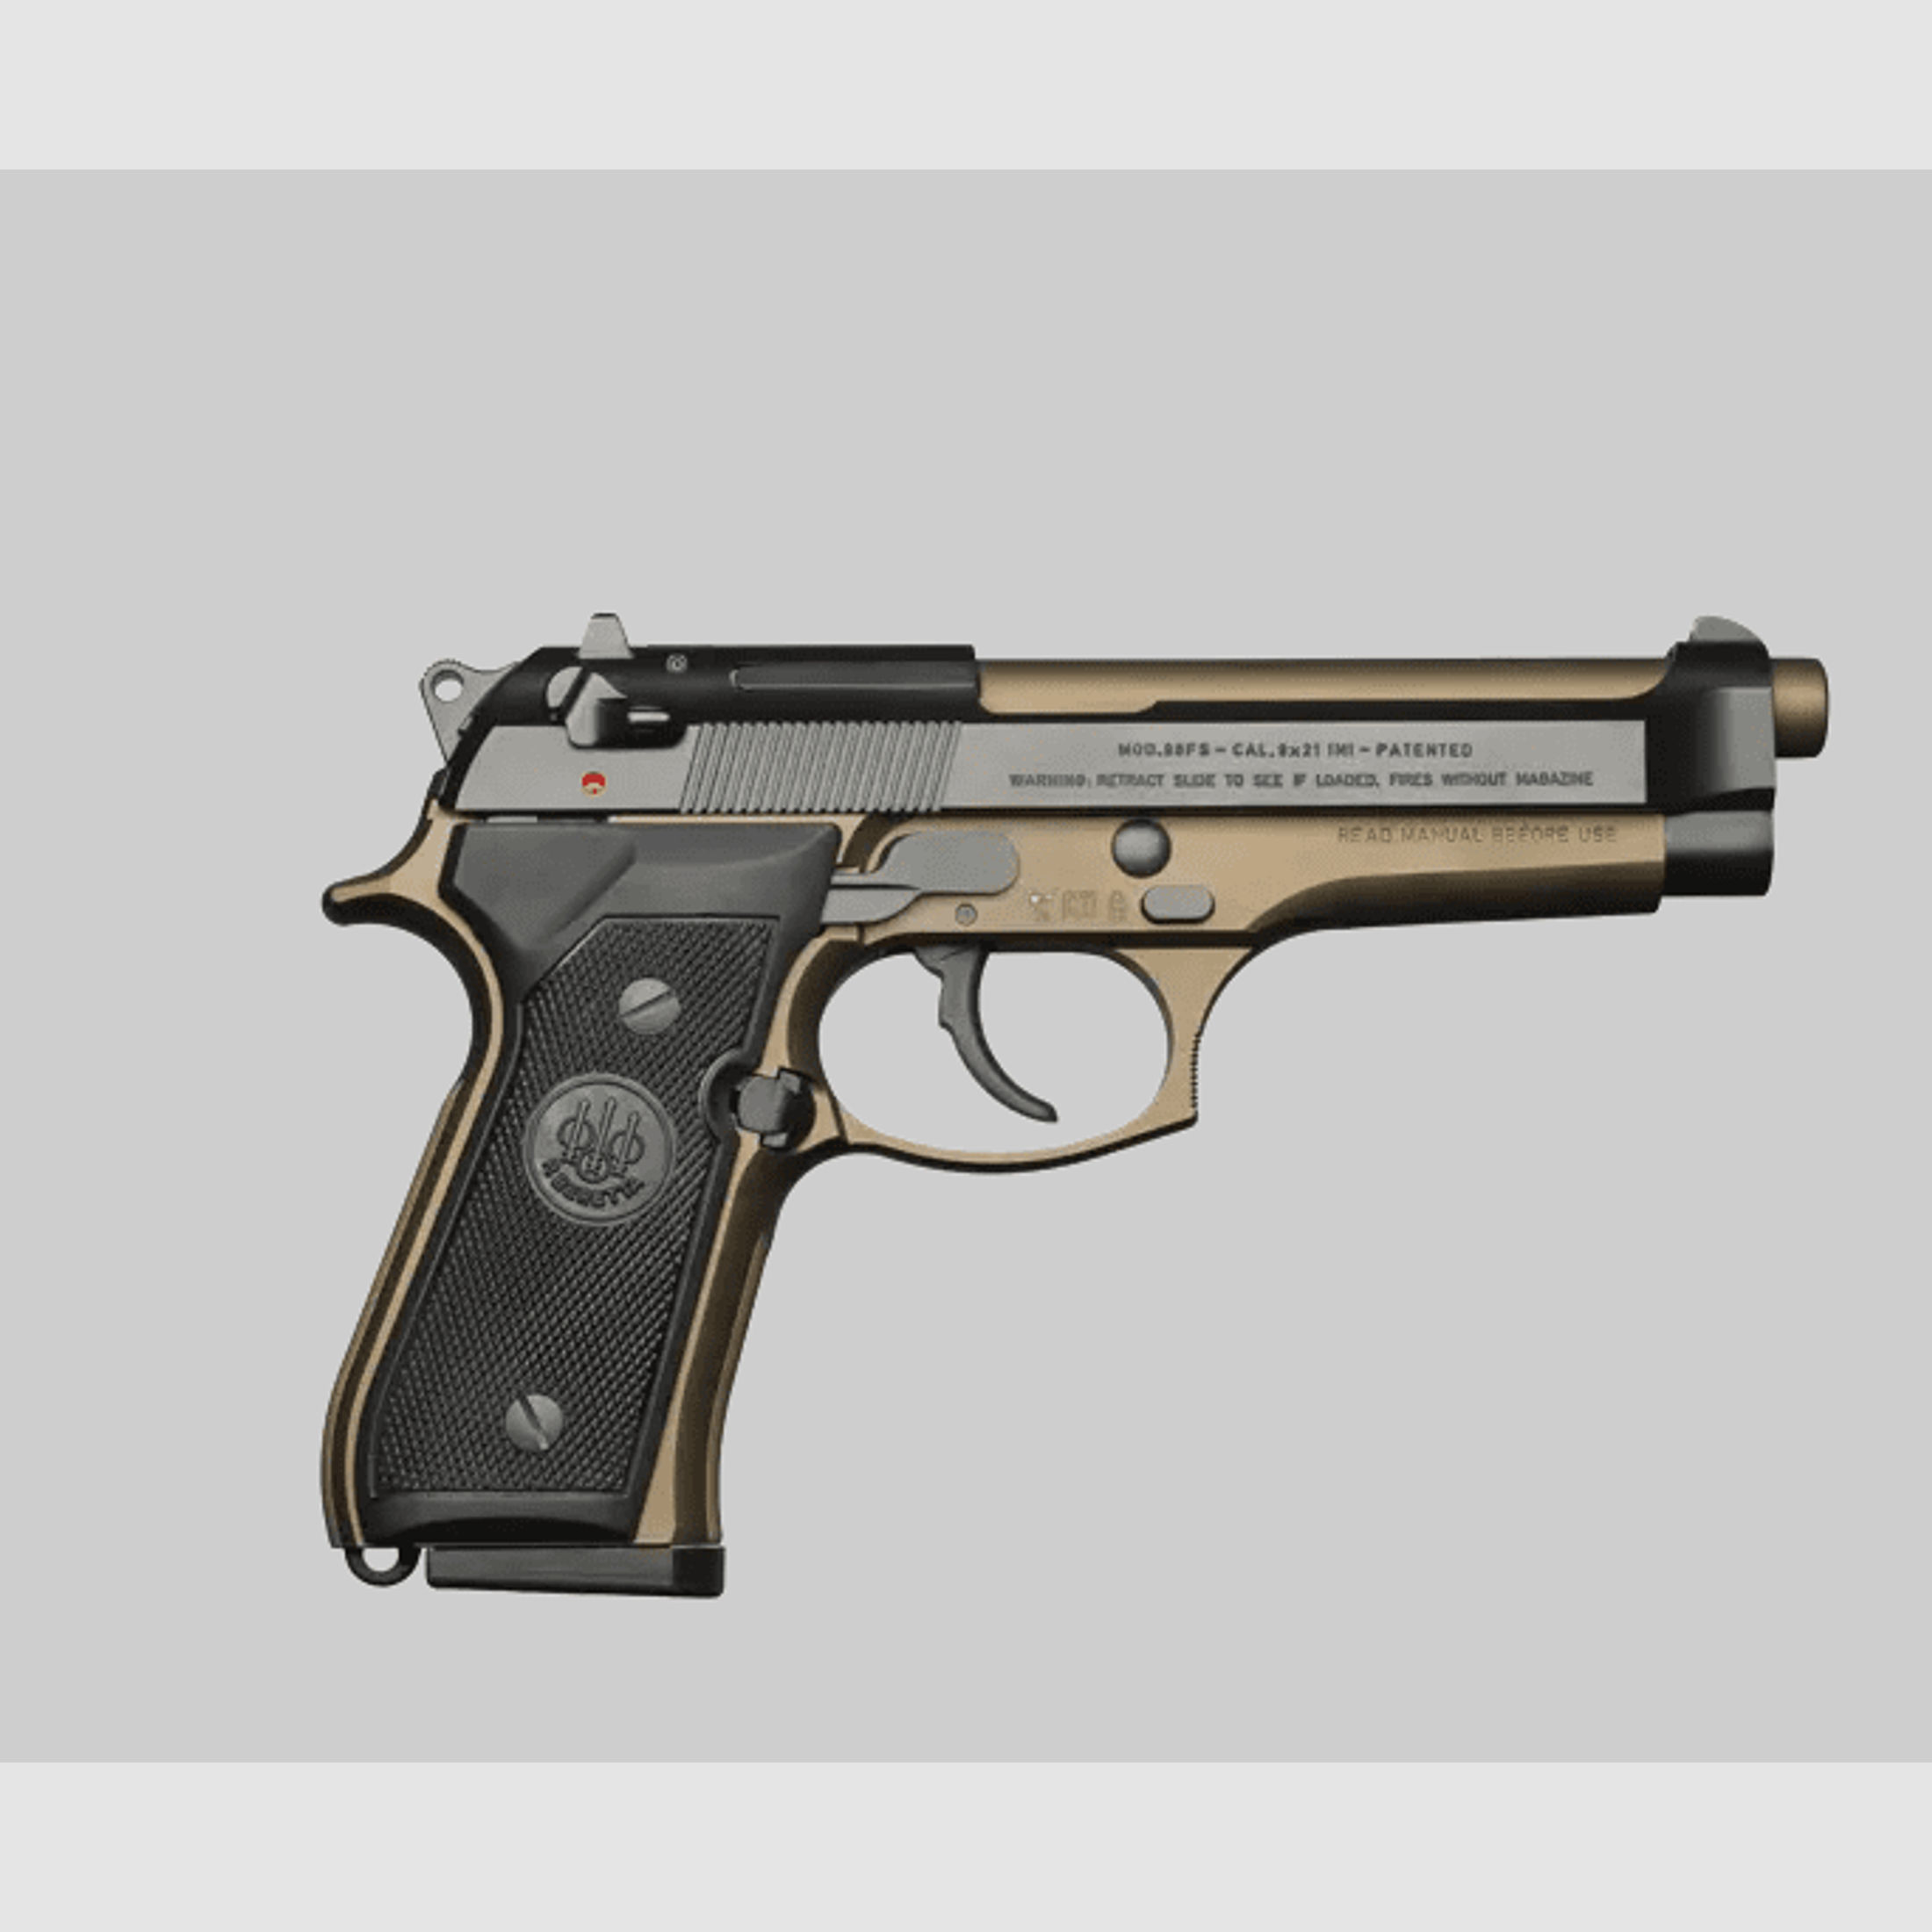 Beretta Pistole 92 FS Bronze 9x19